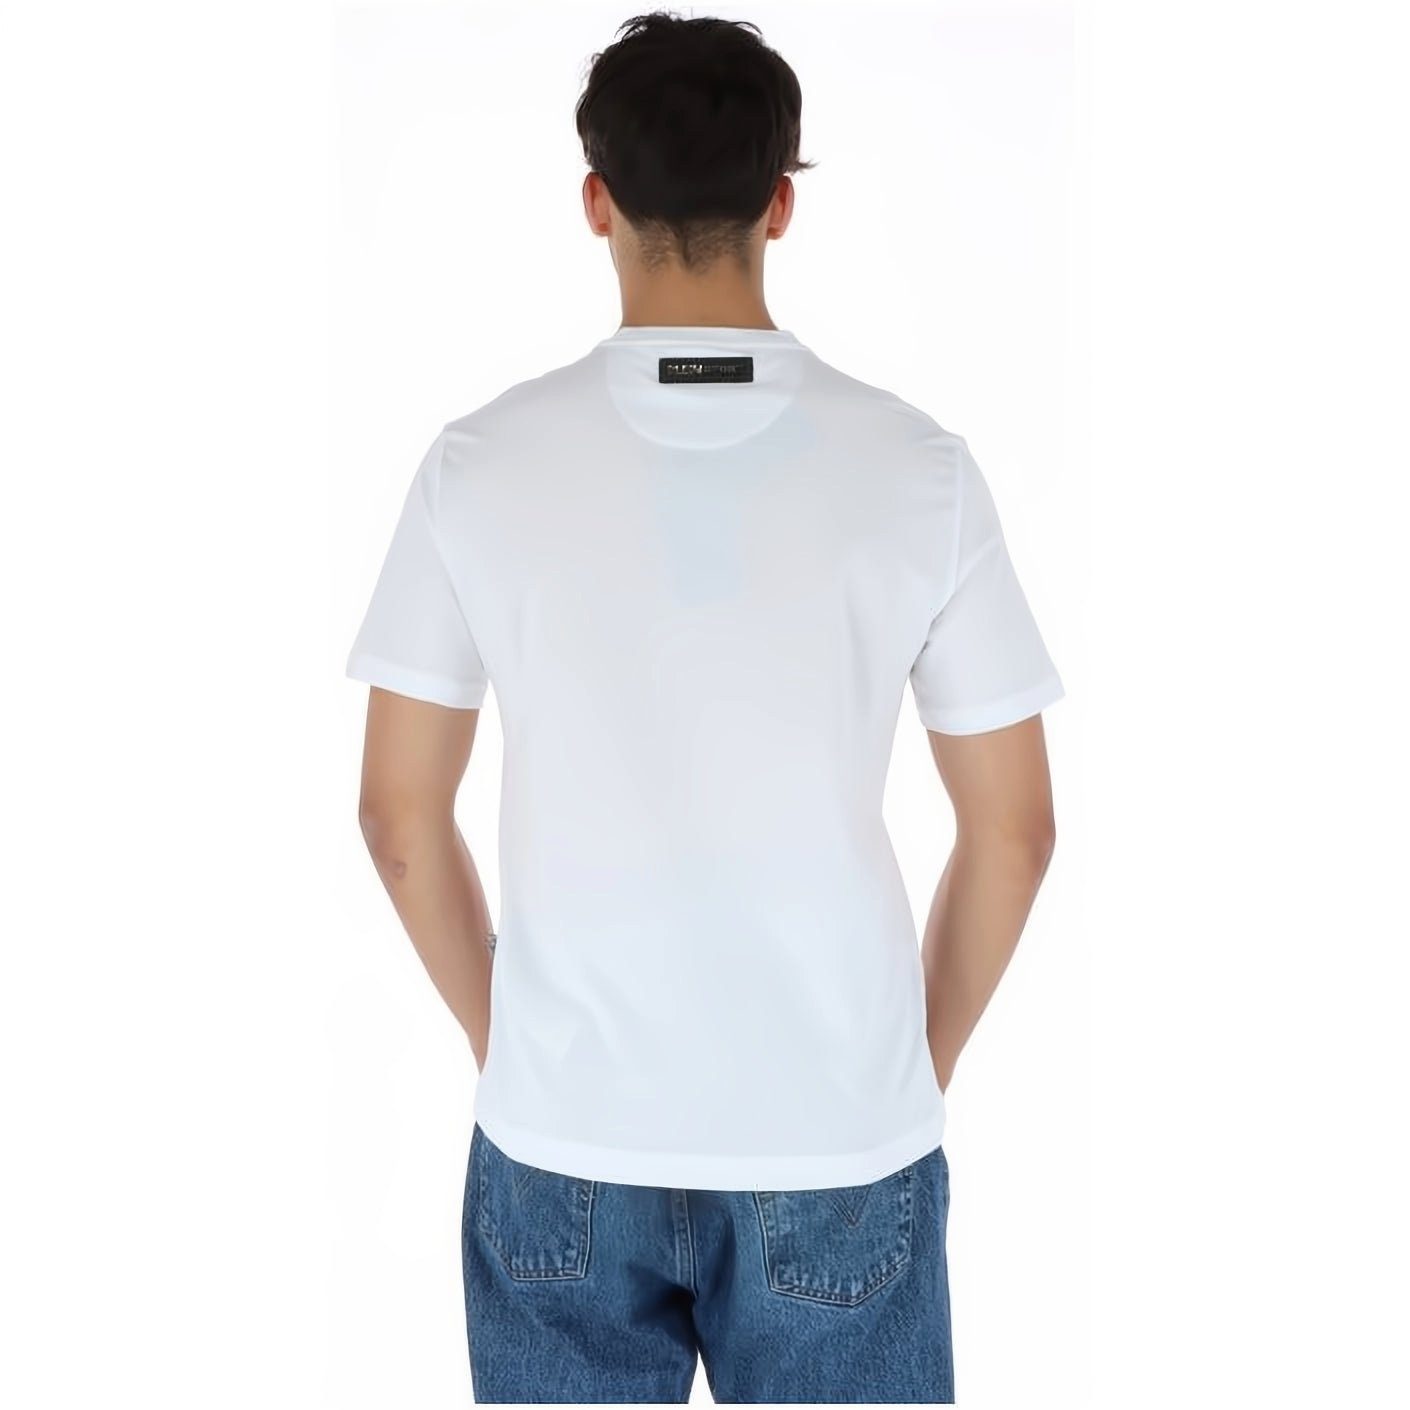 T-Shirt Tragekomfort, hoher NECK Stylischer vielfältige Farbauswahl ROUND PLEIN Look, SPORT